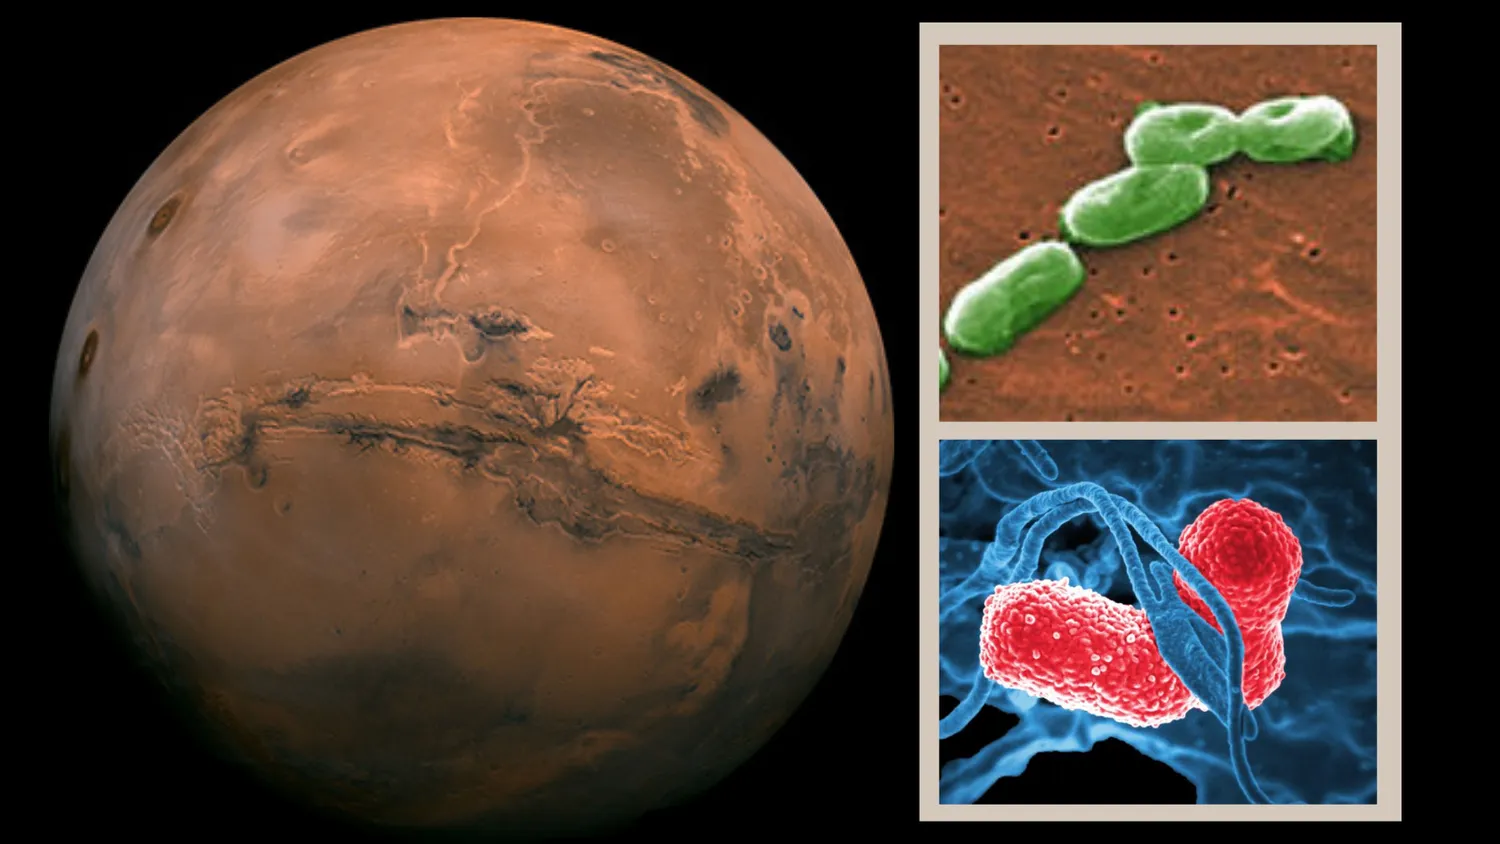 (Links) Der Mars als zukünftiges Ziel für die Erforschung des Weltraums durch den Menschen (Rechts) Zwei der von den Forschern gefundenen Bakterien können im Marsboden überleben